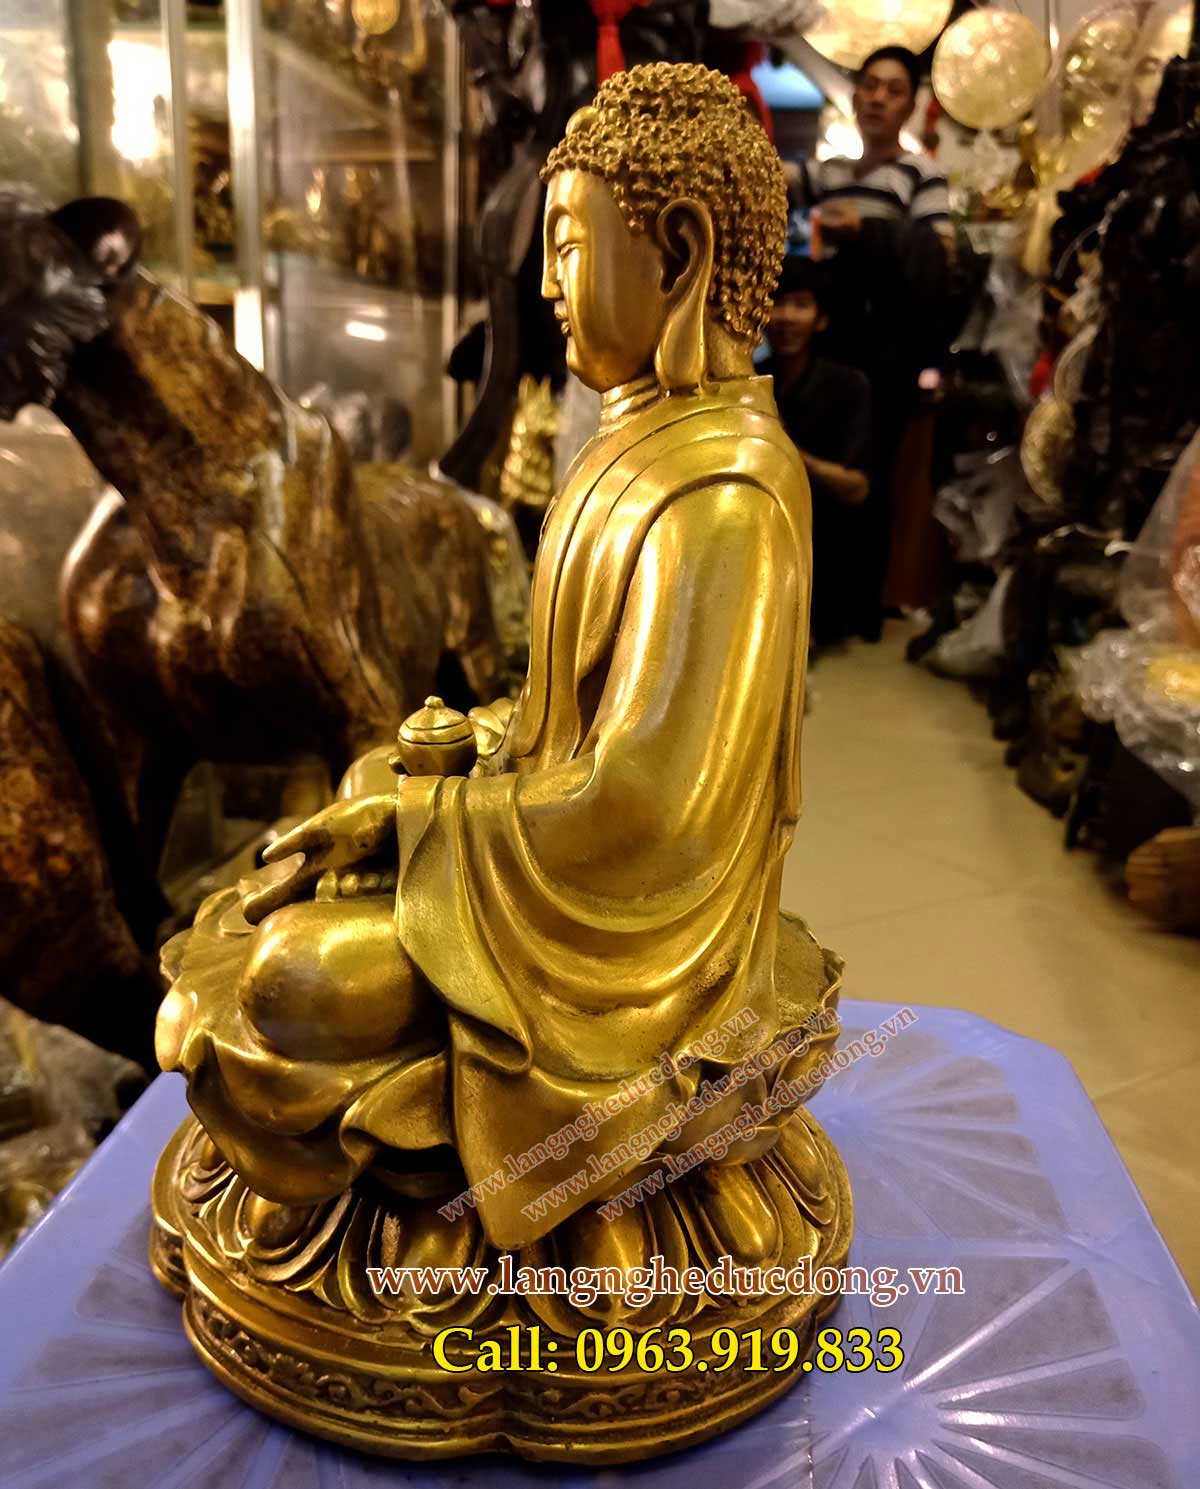 langngheducdong.vn - ượng phật adida cao 25cm tượng bằng đồng vàng